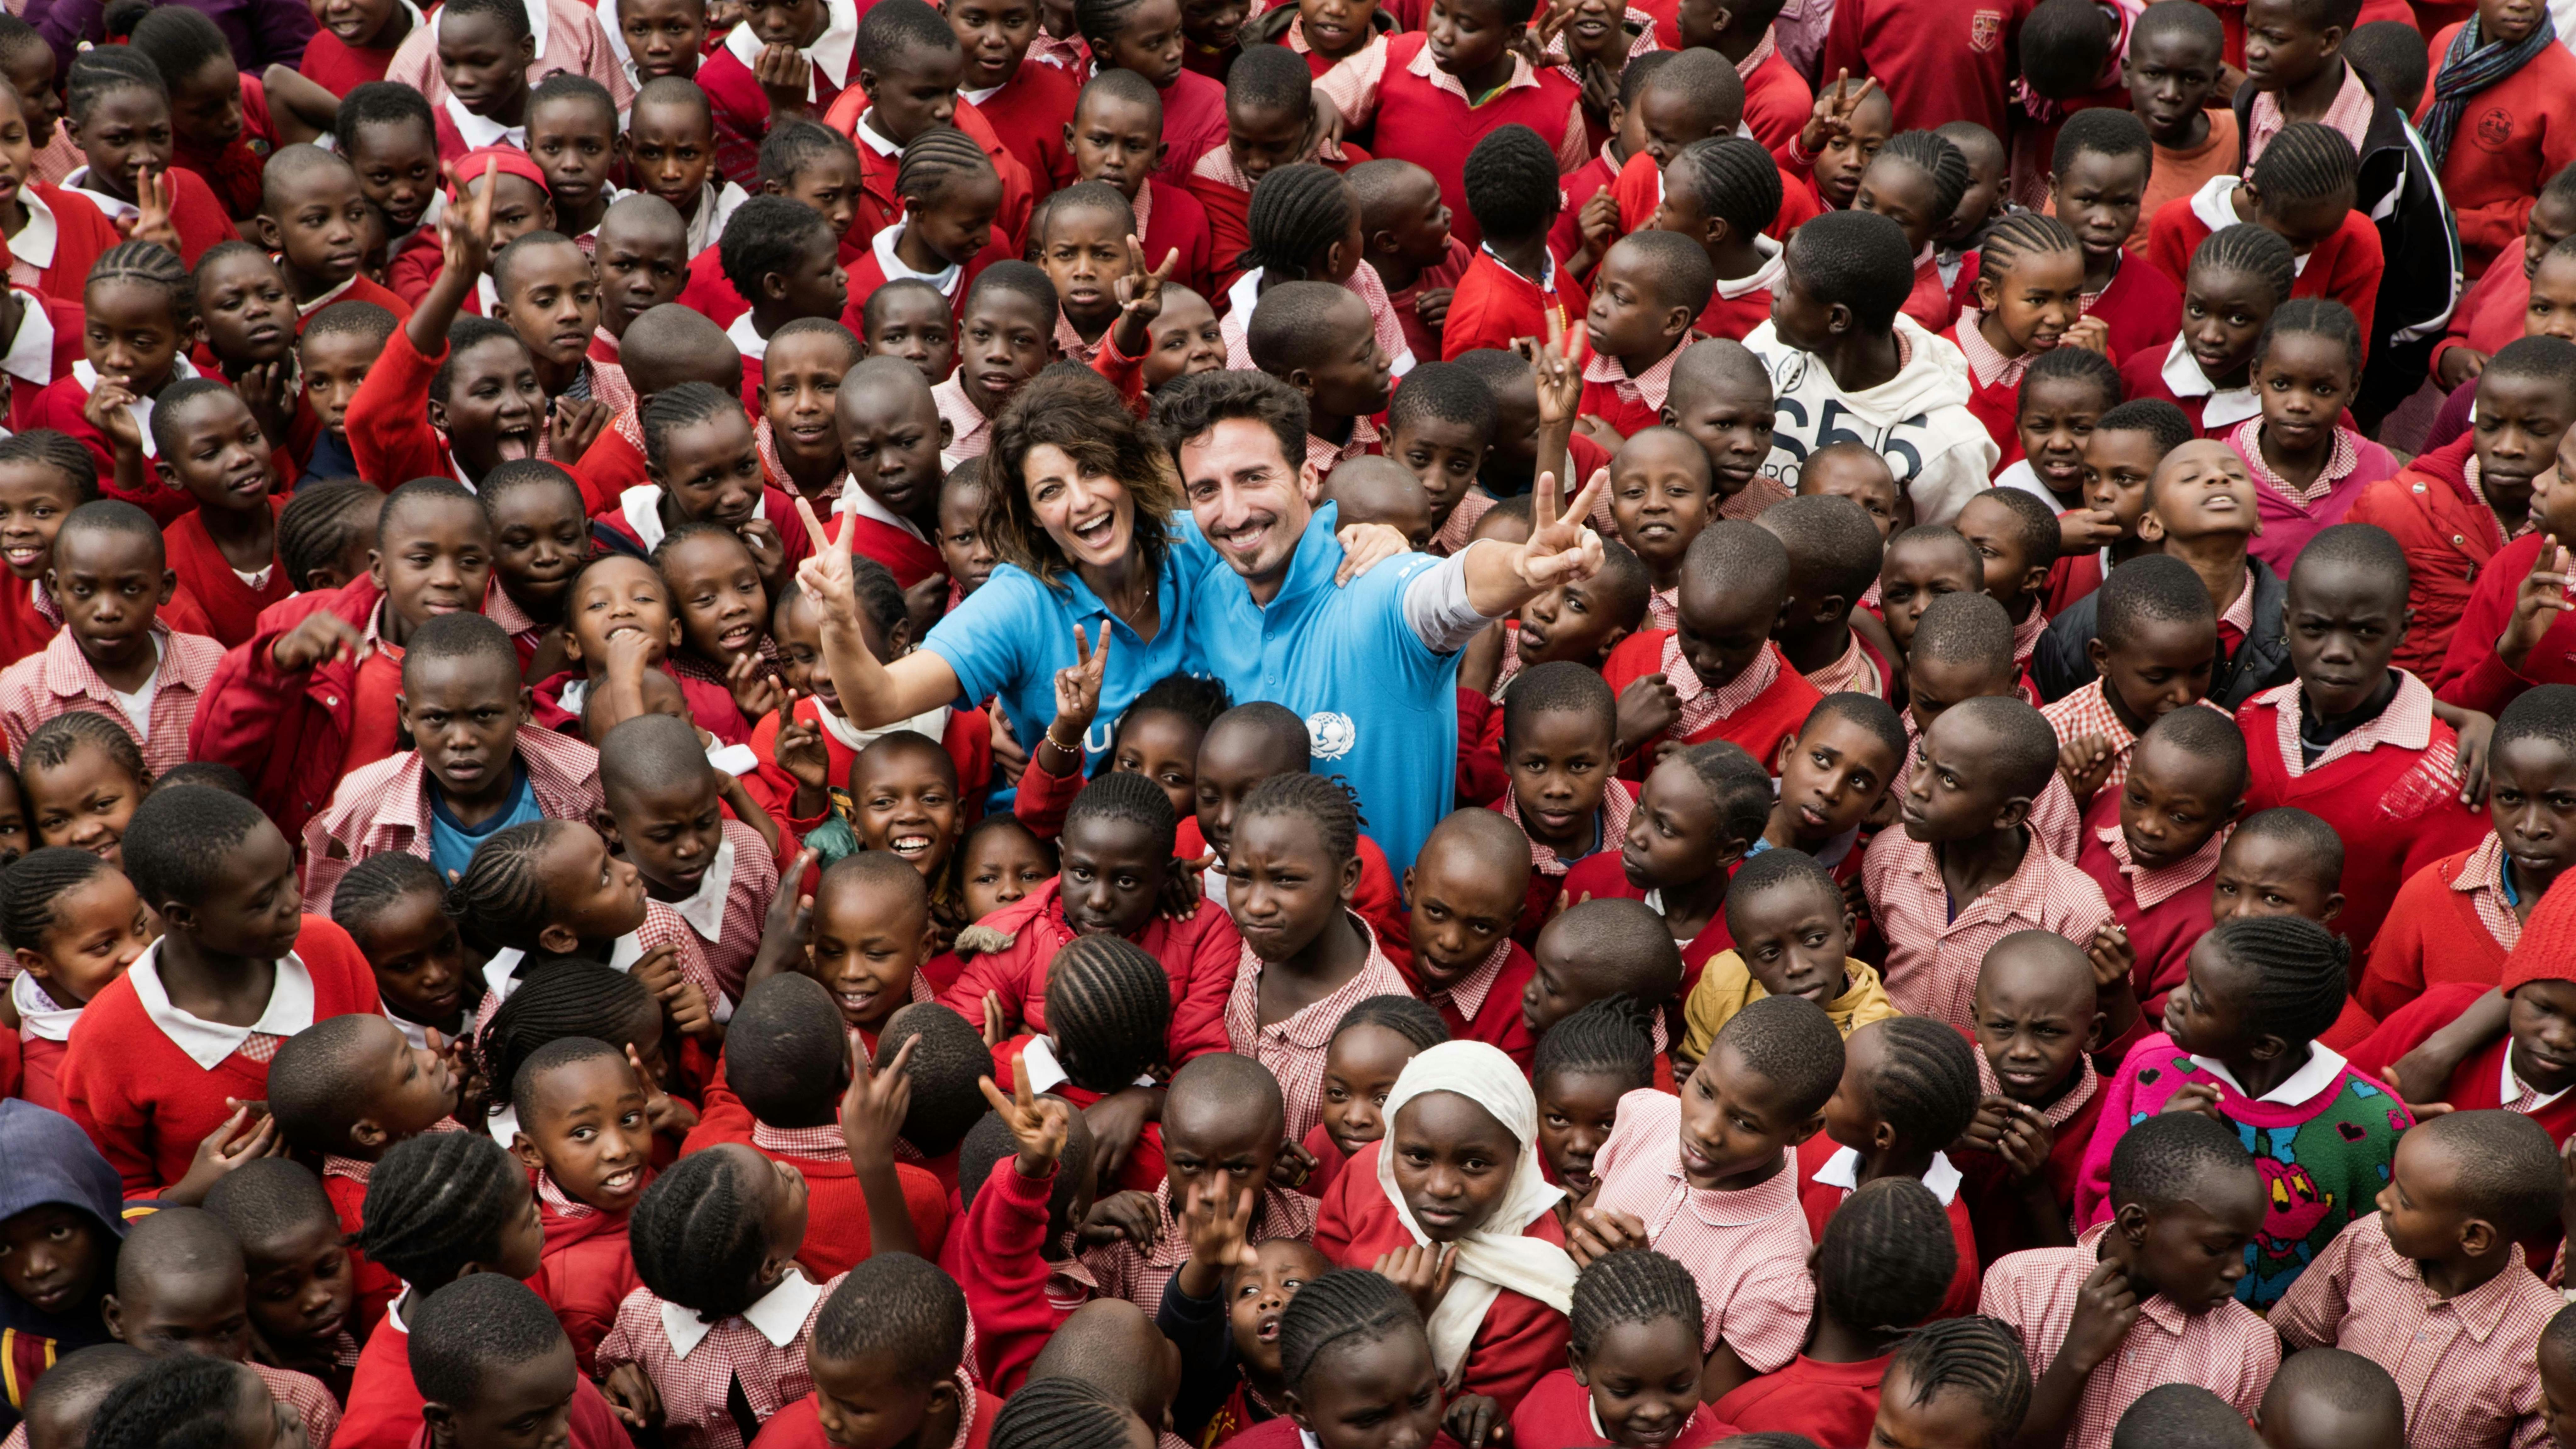 Samantha Togni e Samuel Peron sorridono mentre sono circondati da decine di bambini, siamo in Kenya